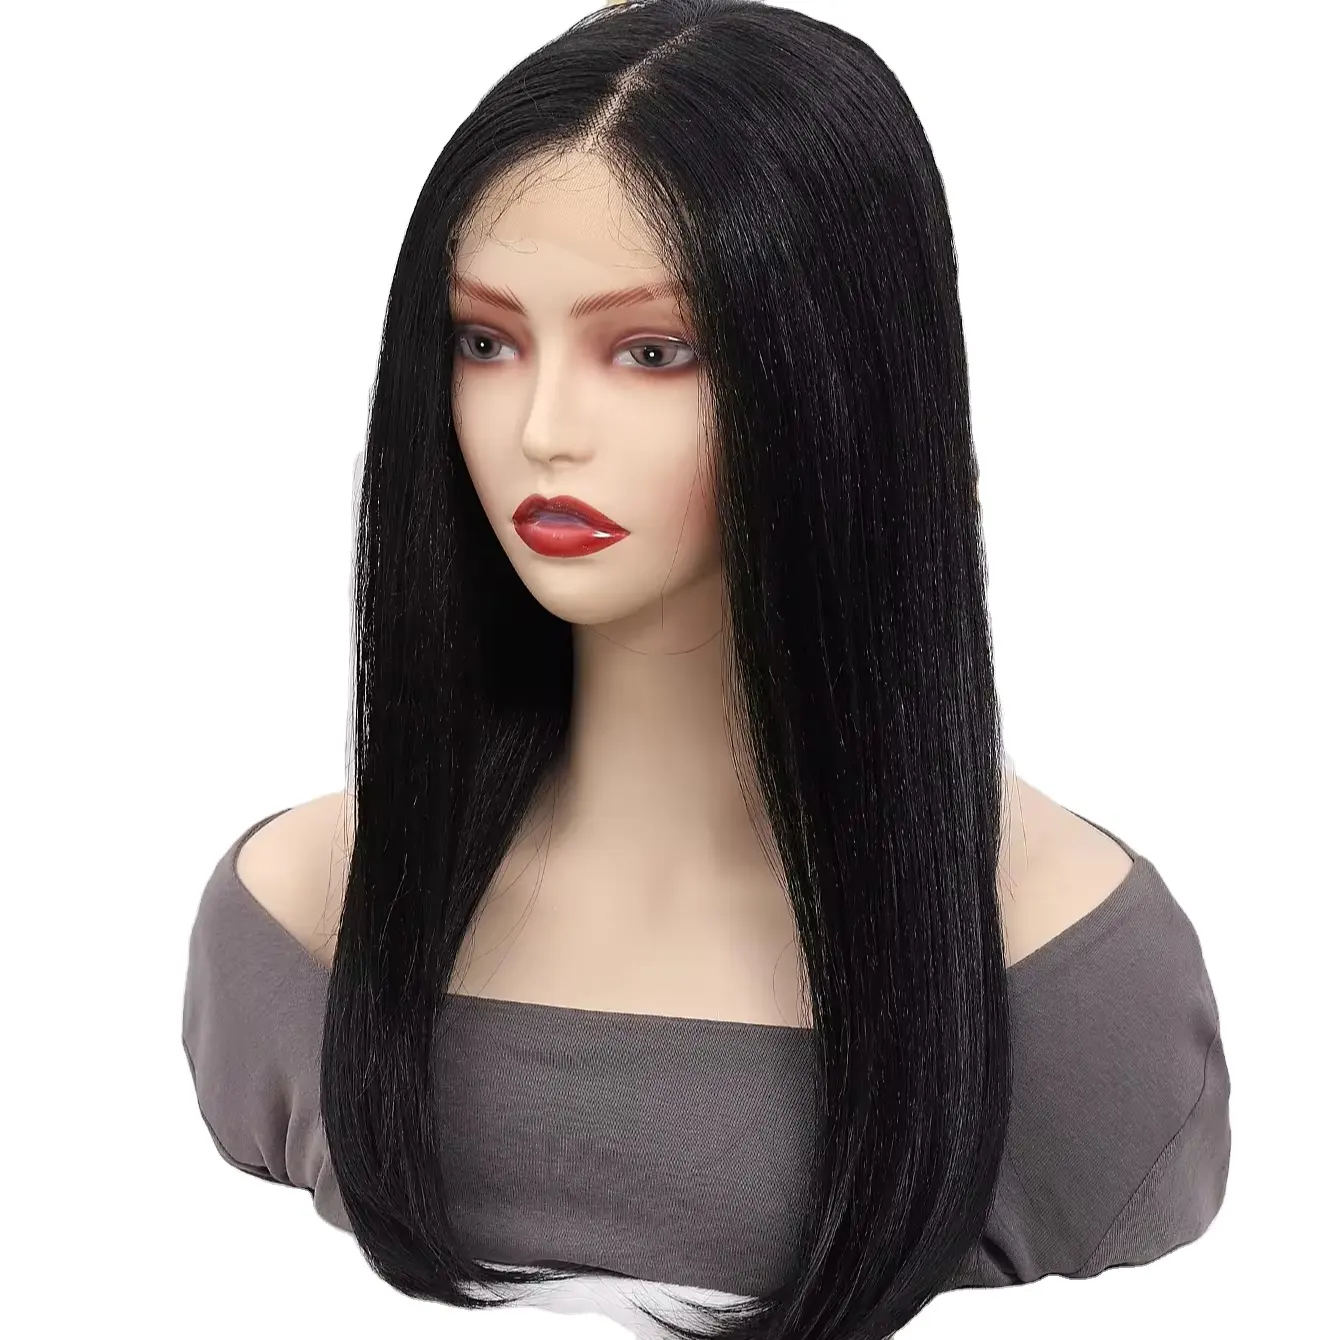 Nuevo encaje largo negro Internet celebridad película onda micro cabello liso cabello período vestido alto nivel de apariencia damas transfronterizo